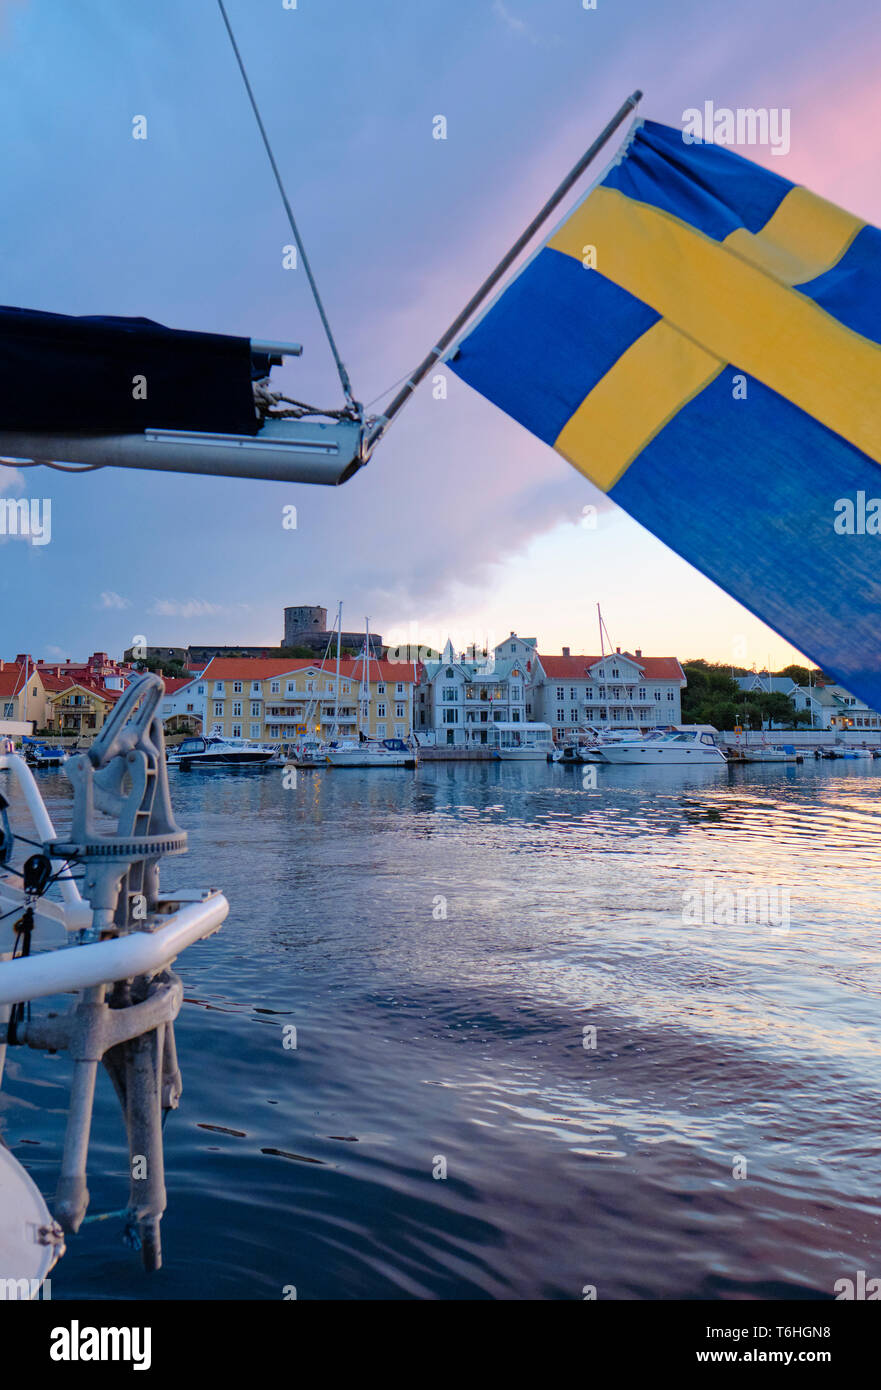 Eine schwedische Flagge bei Marstrand während der jährlichen Boat Show im August in Kungälv/Gemeinde, Västra Götaland Grafschaft Bohuslan Küste Schweden Stockfoto